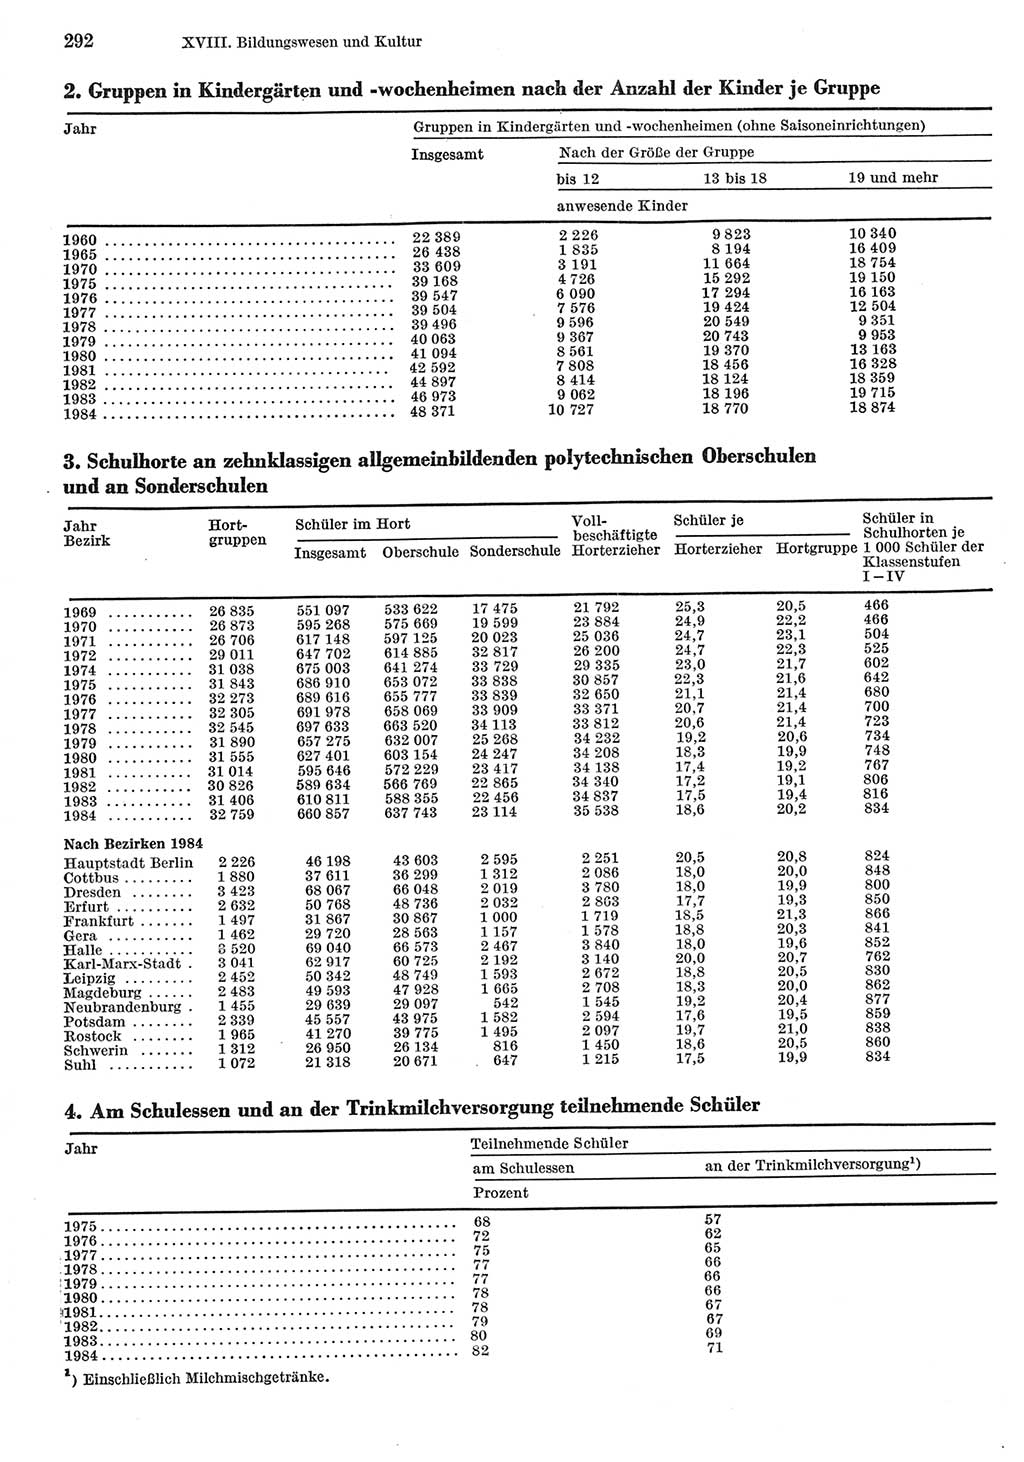 Statistisches Jahrbuch der Deutschen Demokratischen Republik (DDR) 1985, Seite 292 (Stat. Jb. DDR 1985, S. 292)